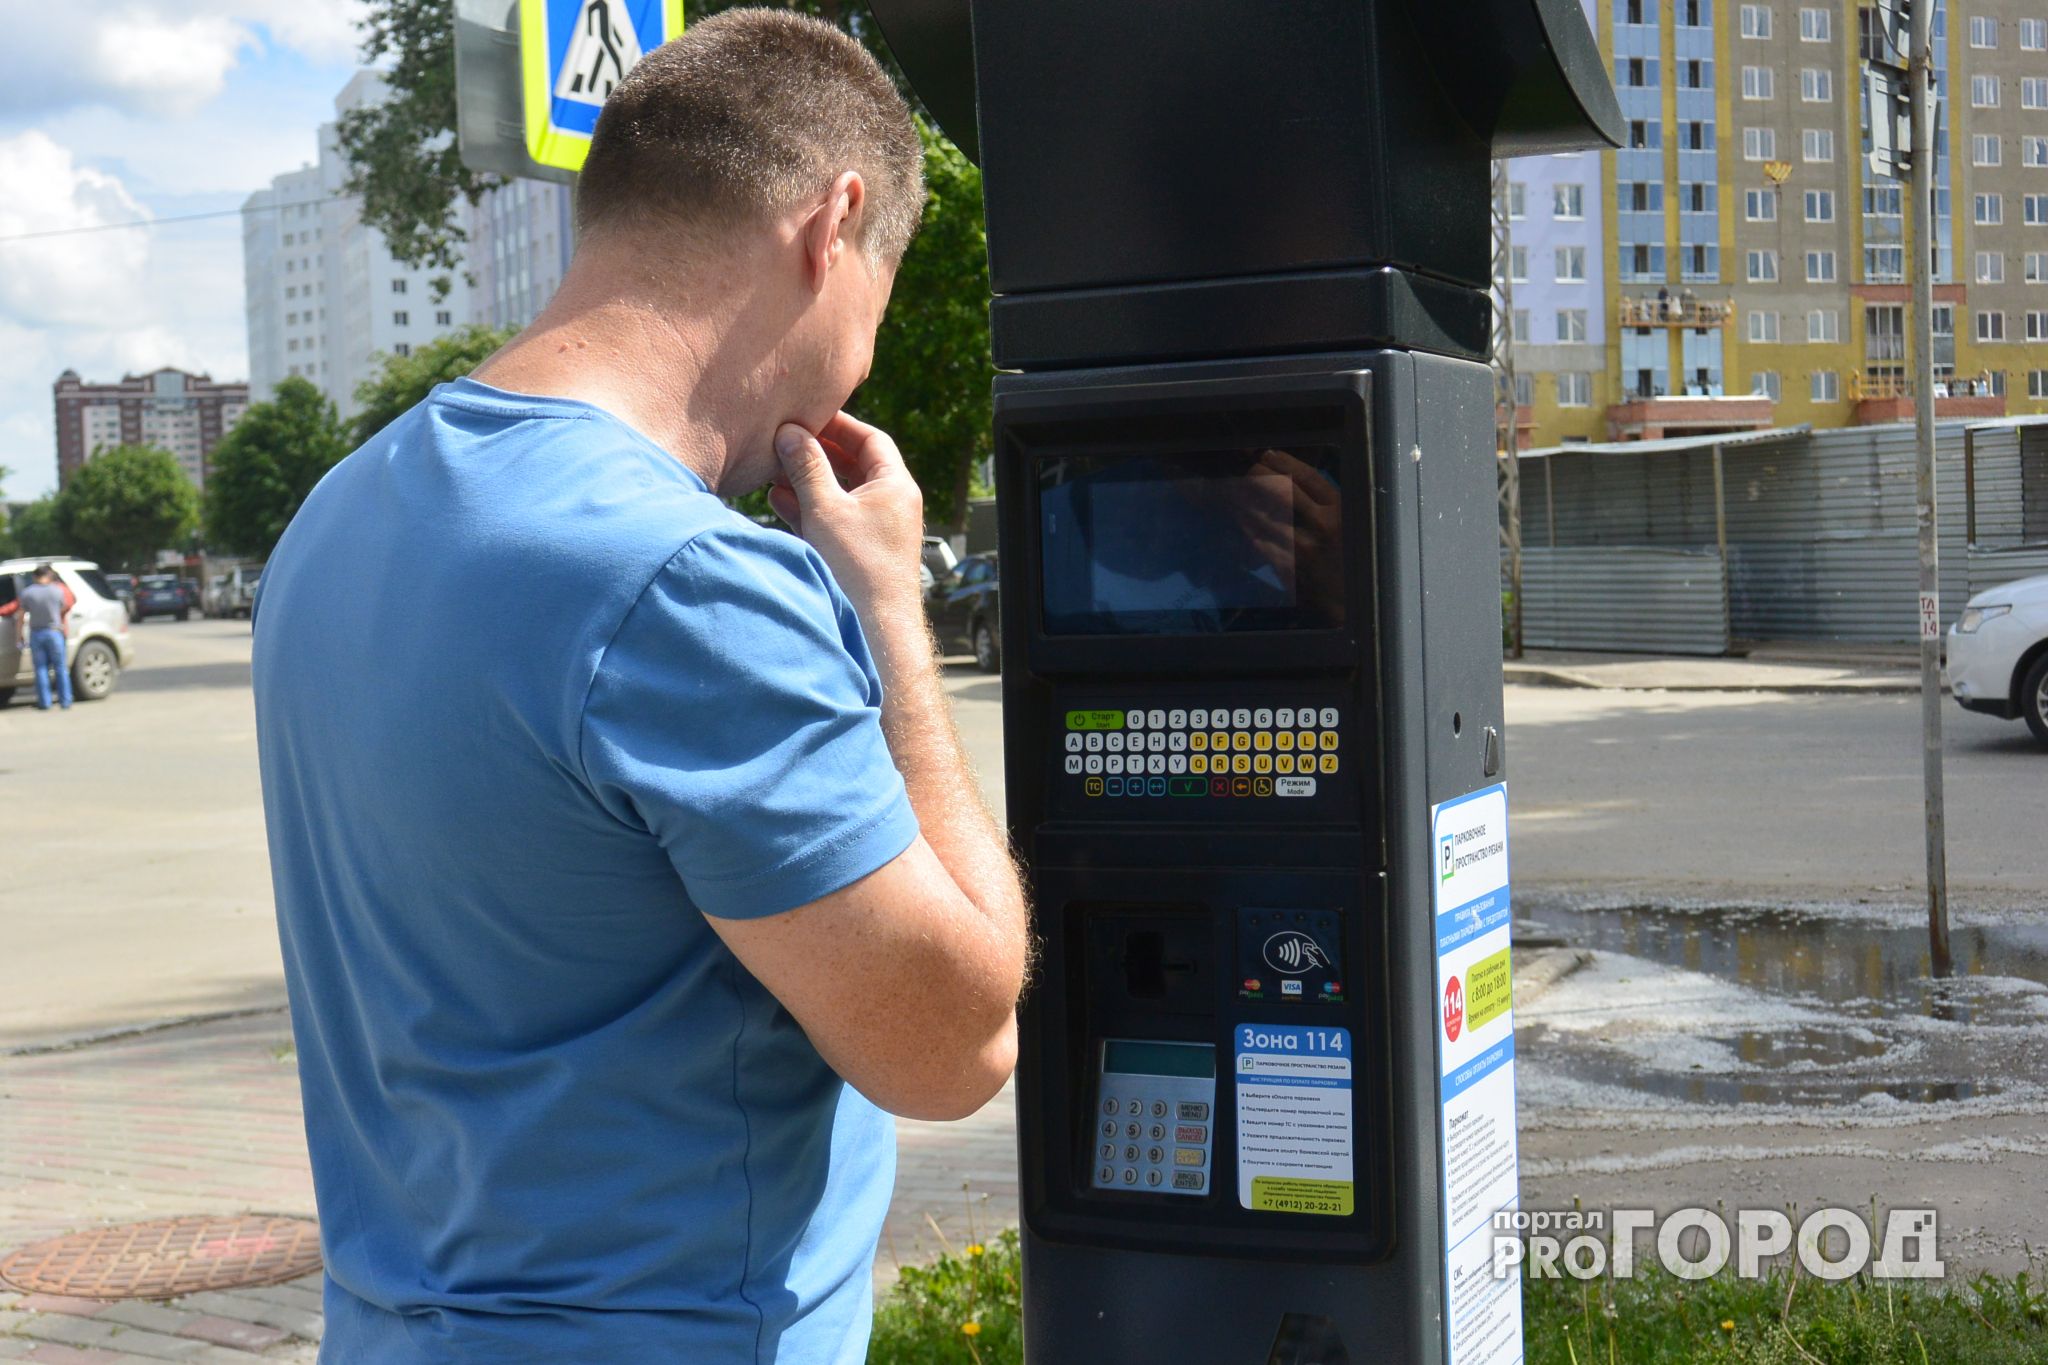 Рязанские парковки: кто выигрывает от введения платных услуг, кроме Ростелекома